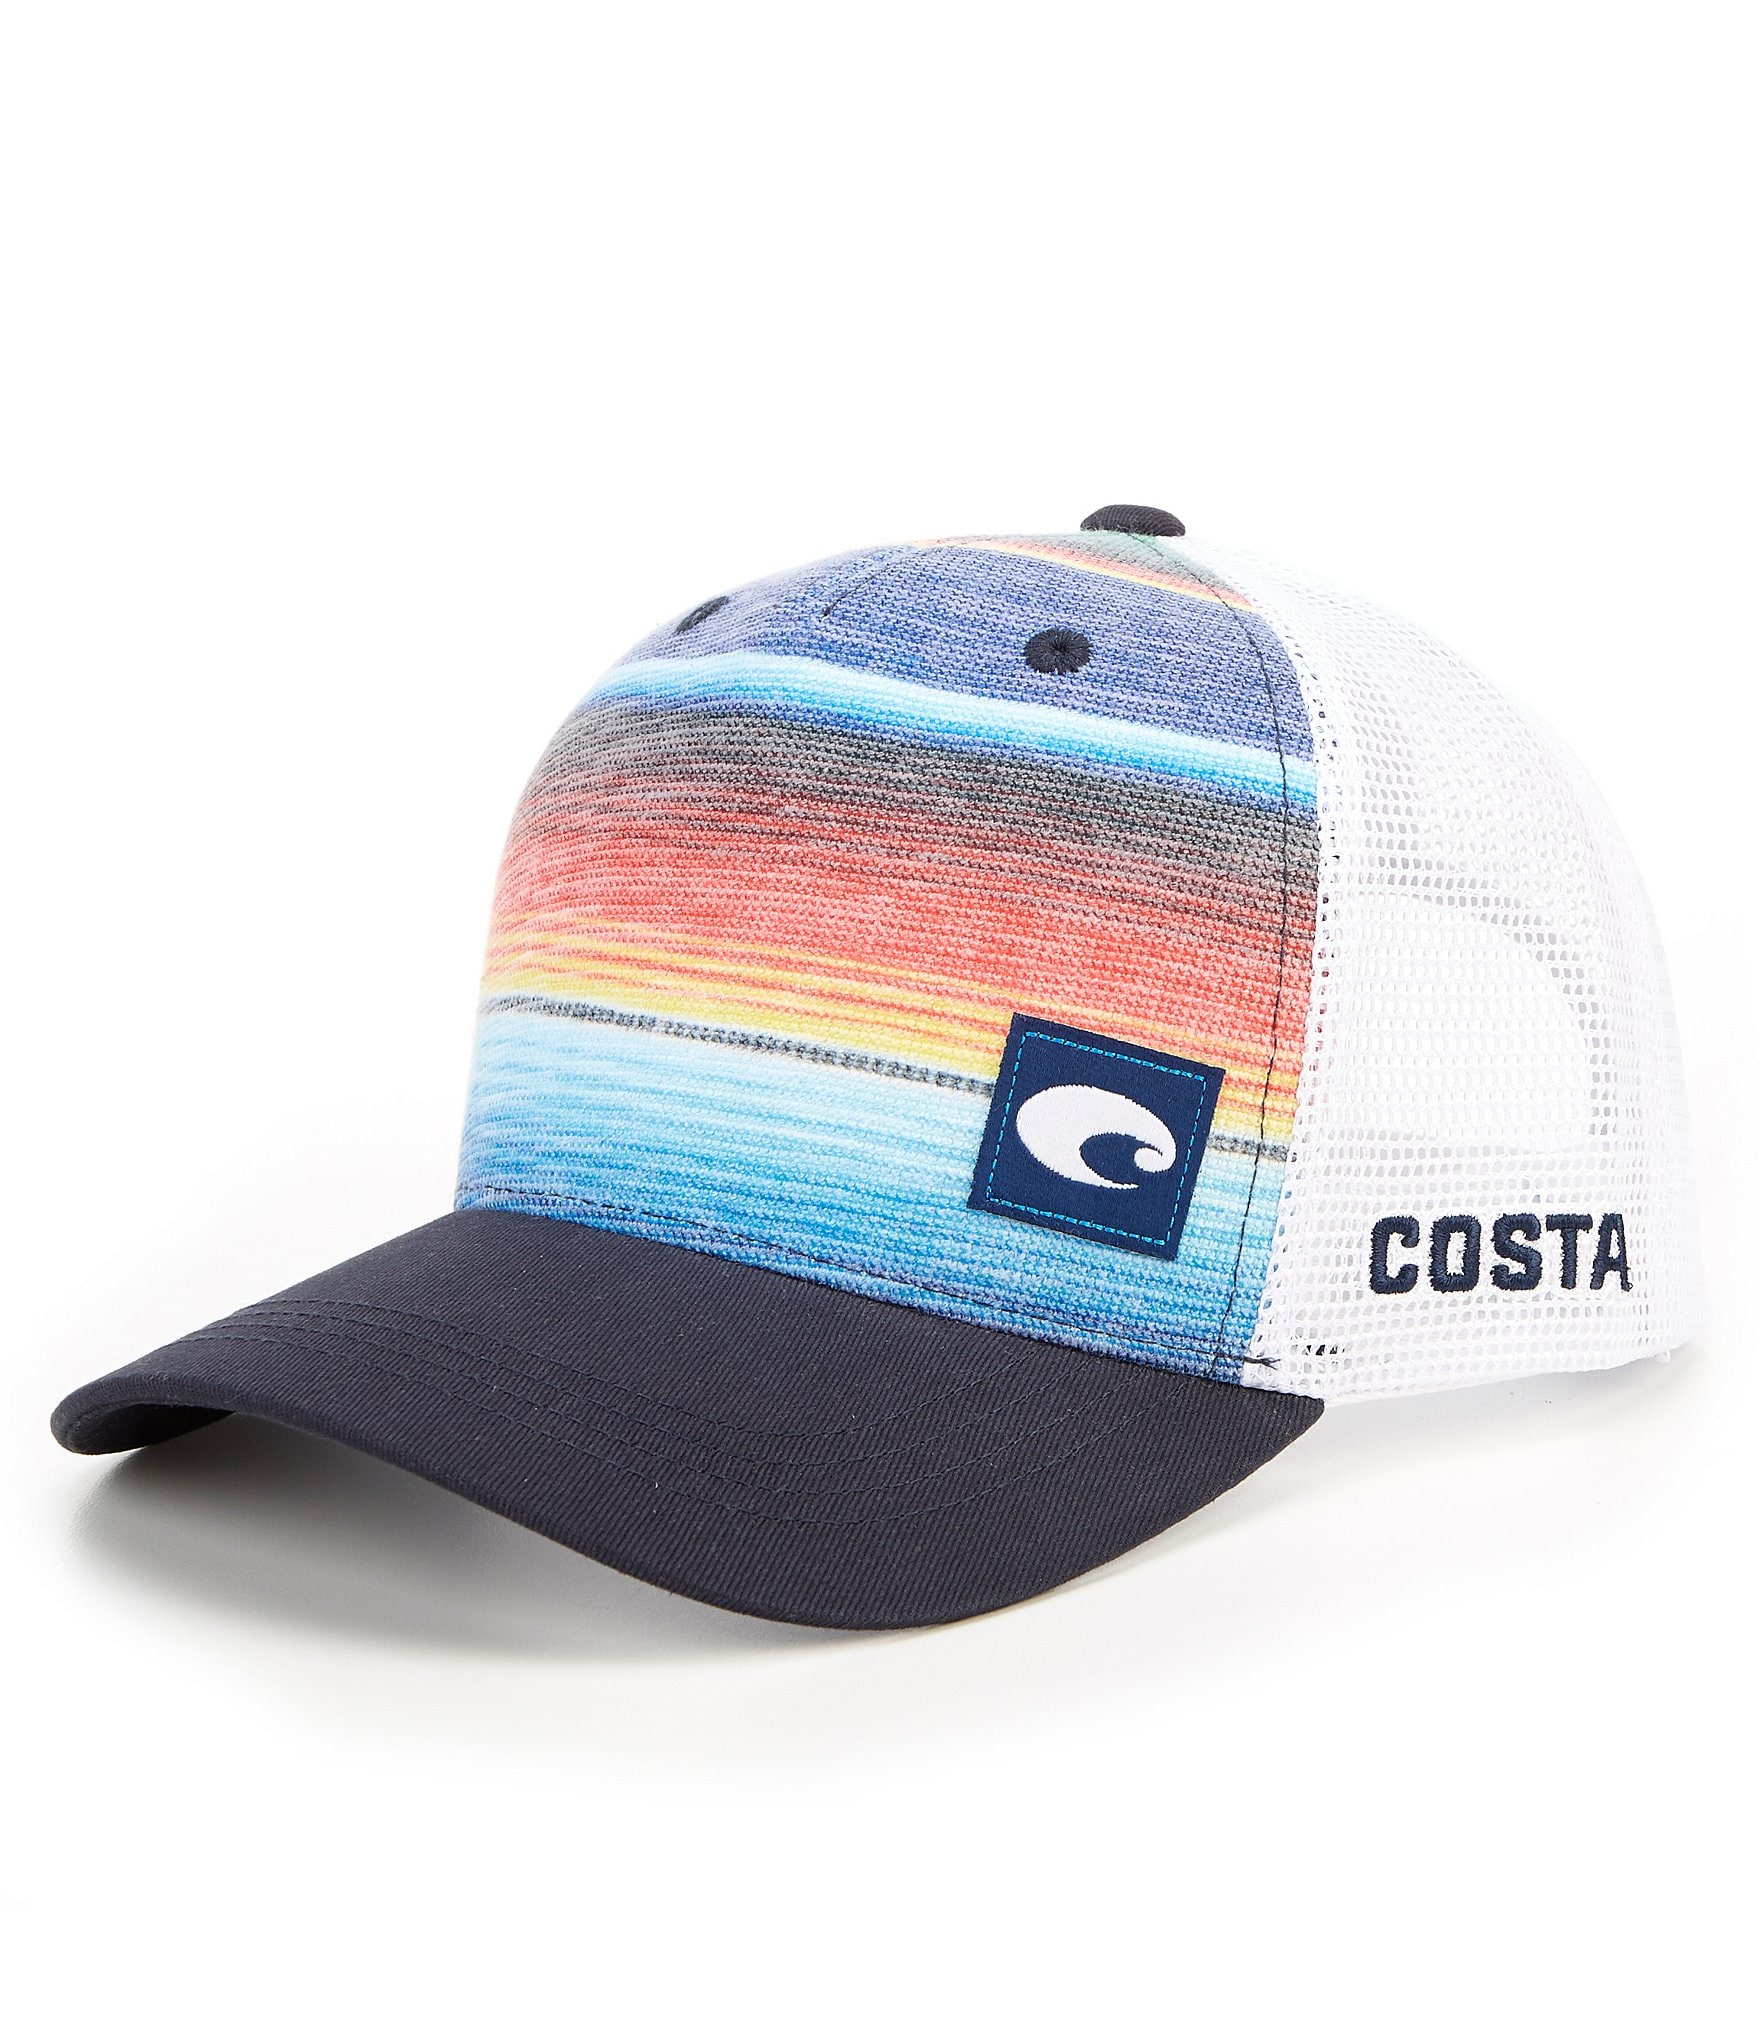 Costa Baja Stripe Trucker Hat - Blue